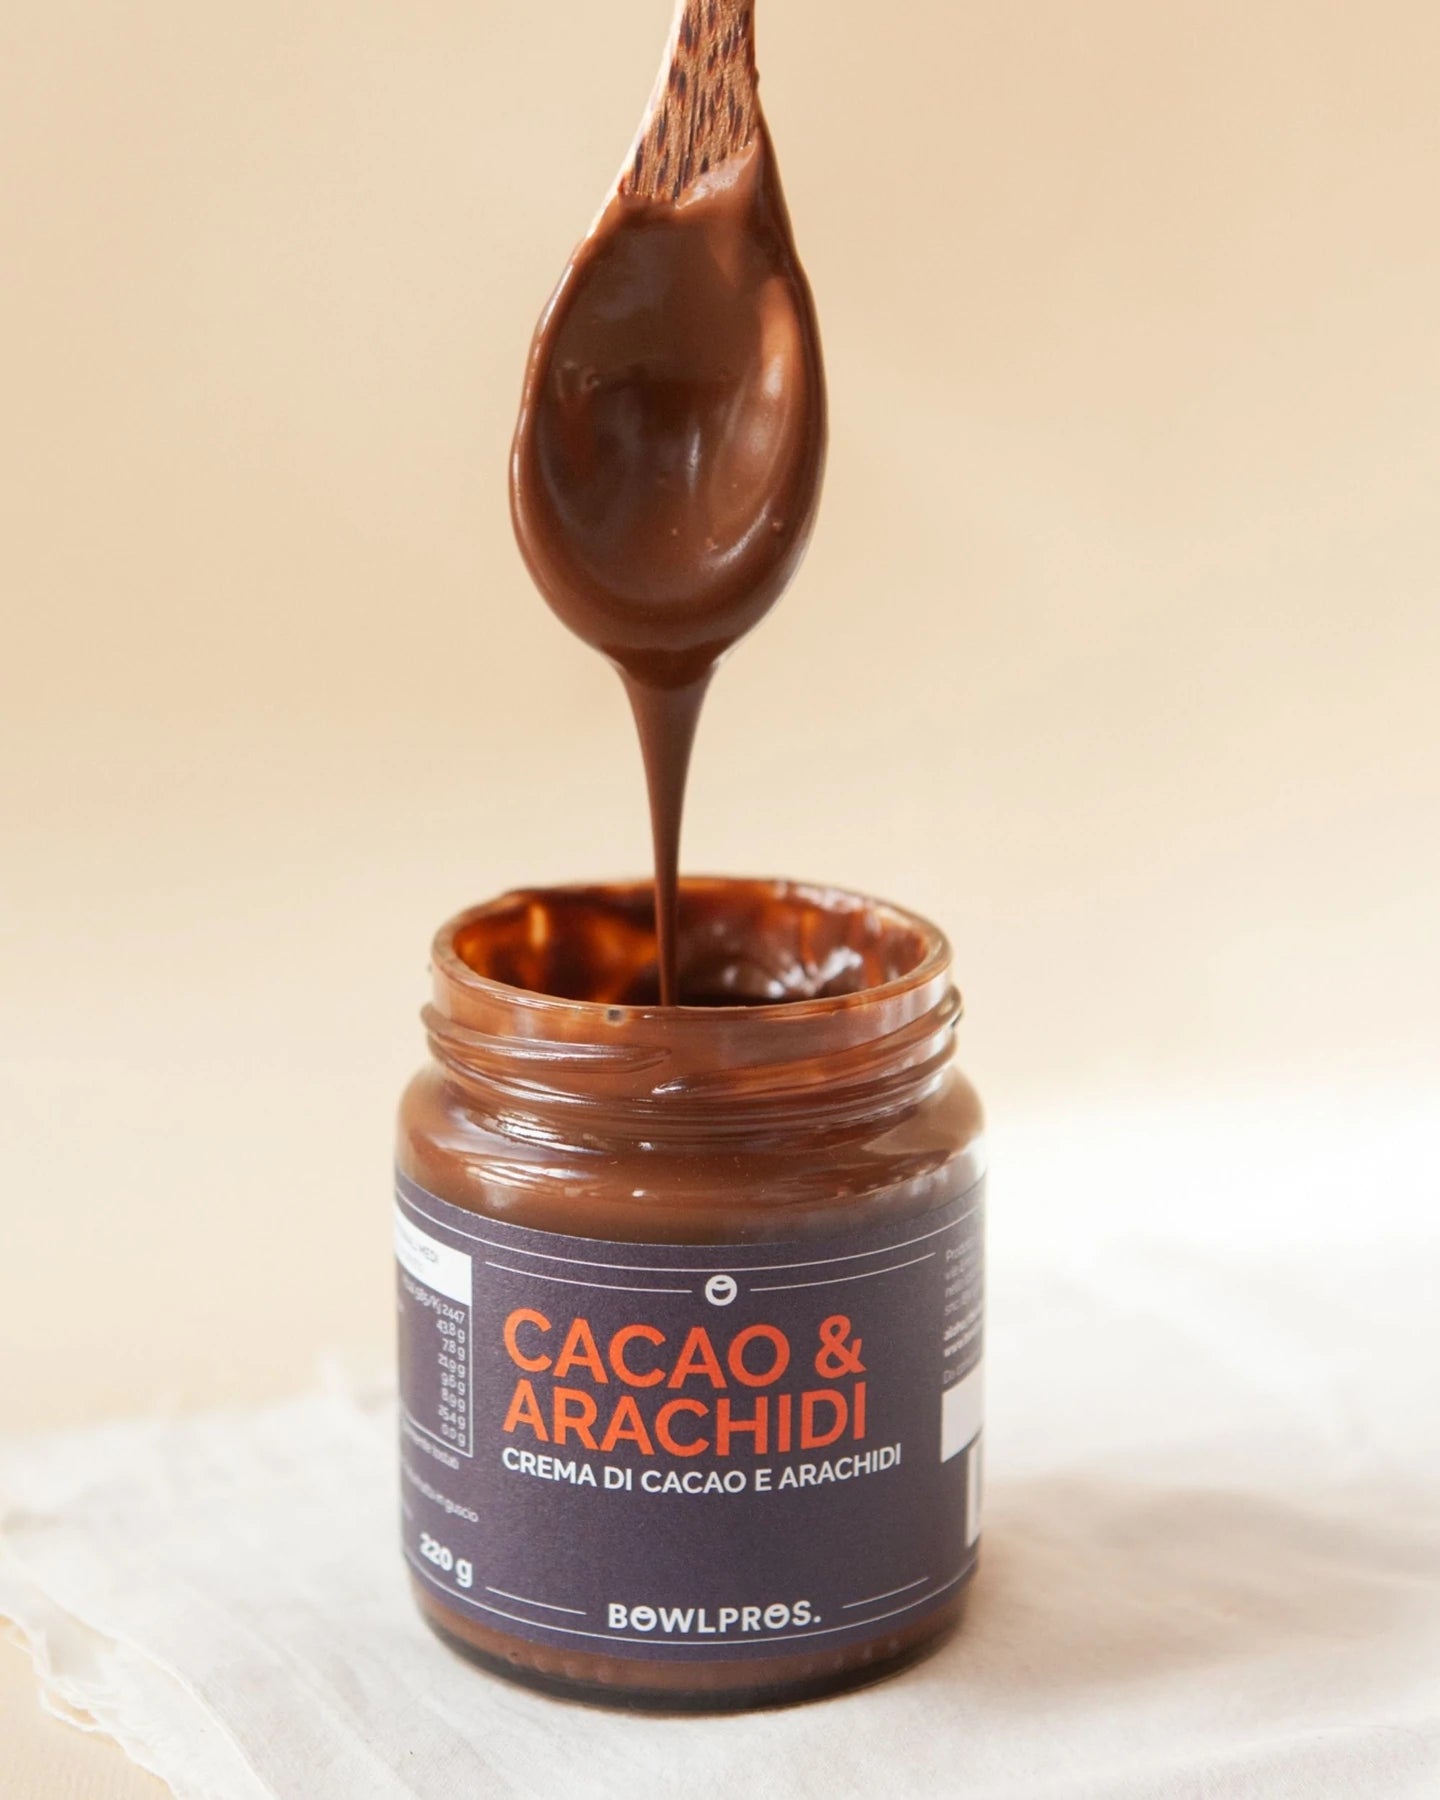 Crema di Cacao e Arachidi